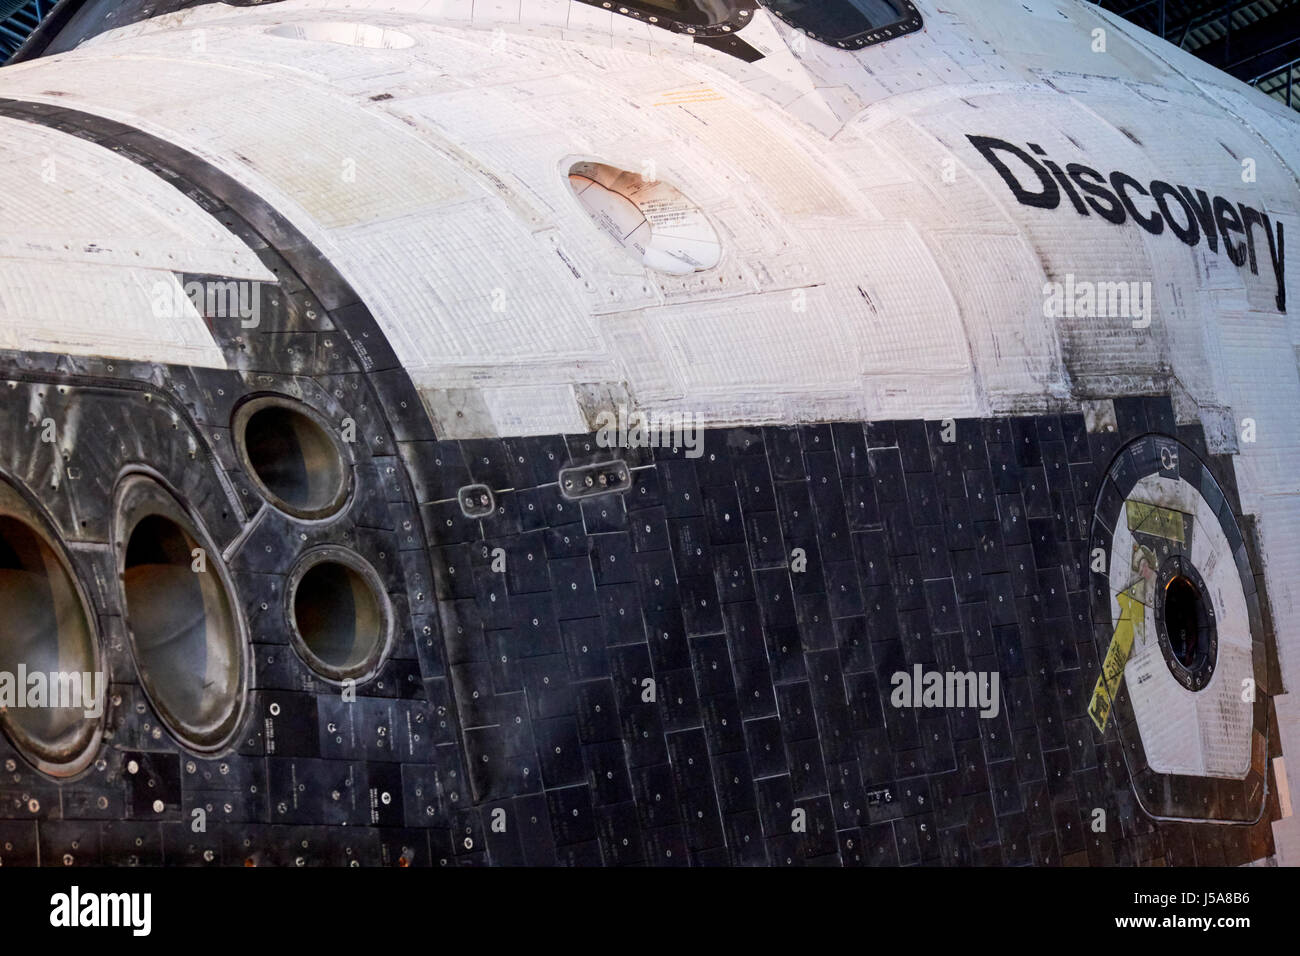 Schermo termico piastrelle naso spintori e uscita di emergenza sulla navetta spaziale Discovery usa Foto Stock